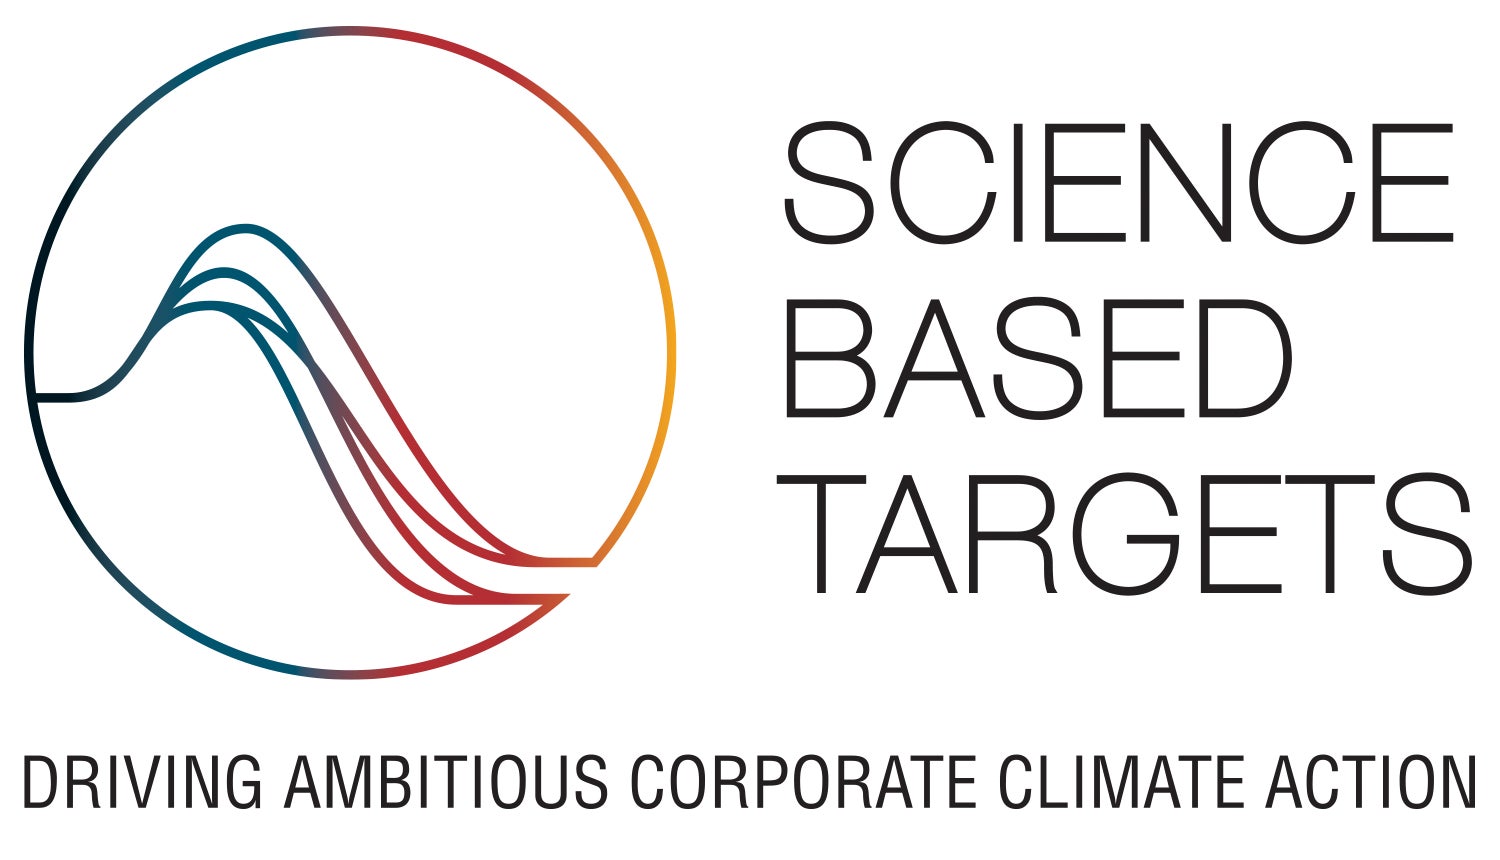 《株式会社スタジオオニオングループ》の《温室効果ガス排出量削減目標》が《国際イニシアチブ「SBT(Science Based Targets)」認定を取得》しましたのサブ画像1